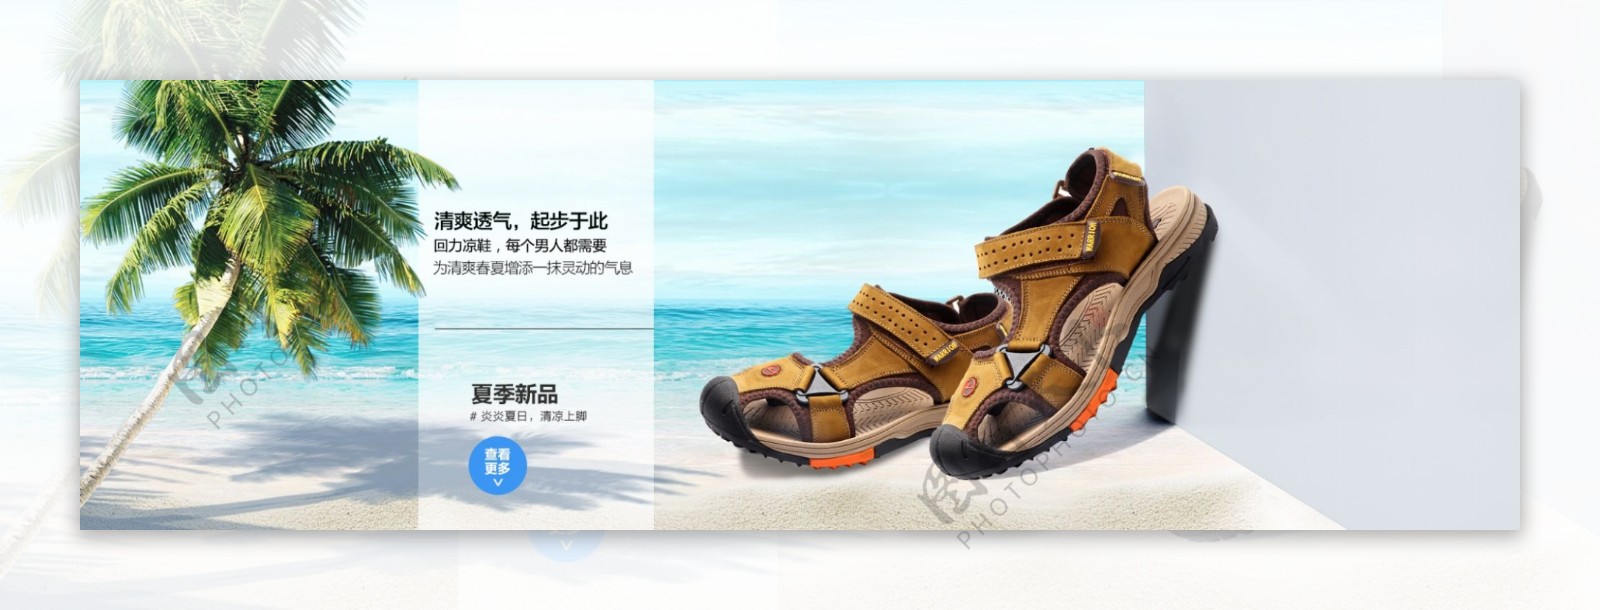 501777海报凉鞋李海平海滩